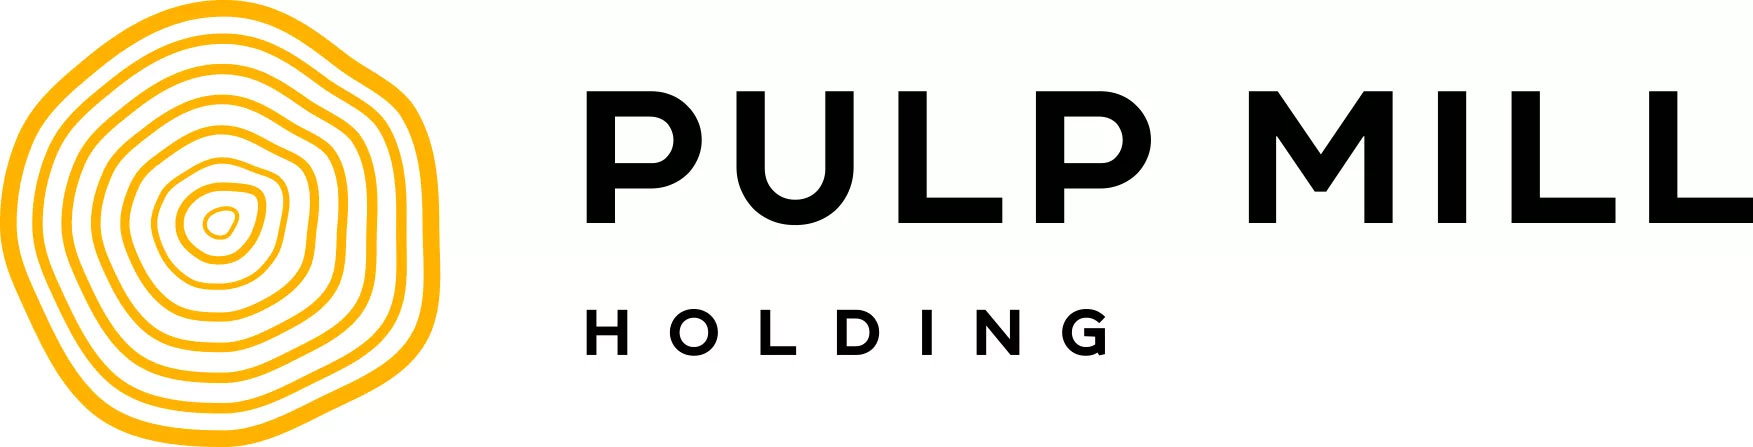 Австрийско-германский Pulp Mill Holding вложил 1,5 млрд рублей в воронежский завод гофротары